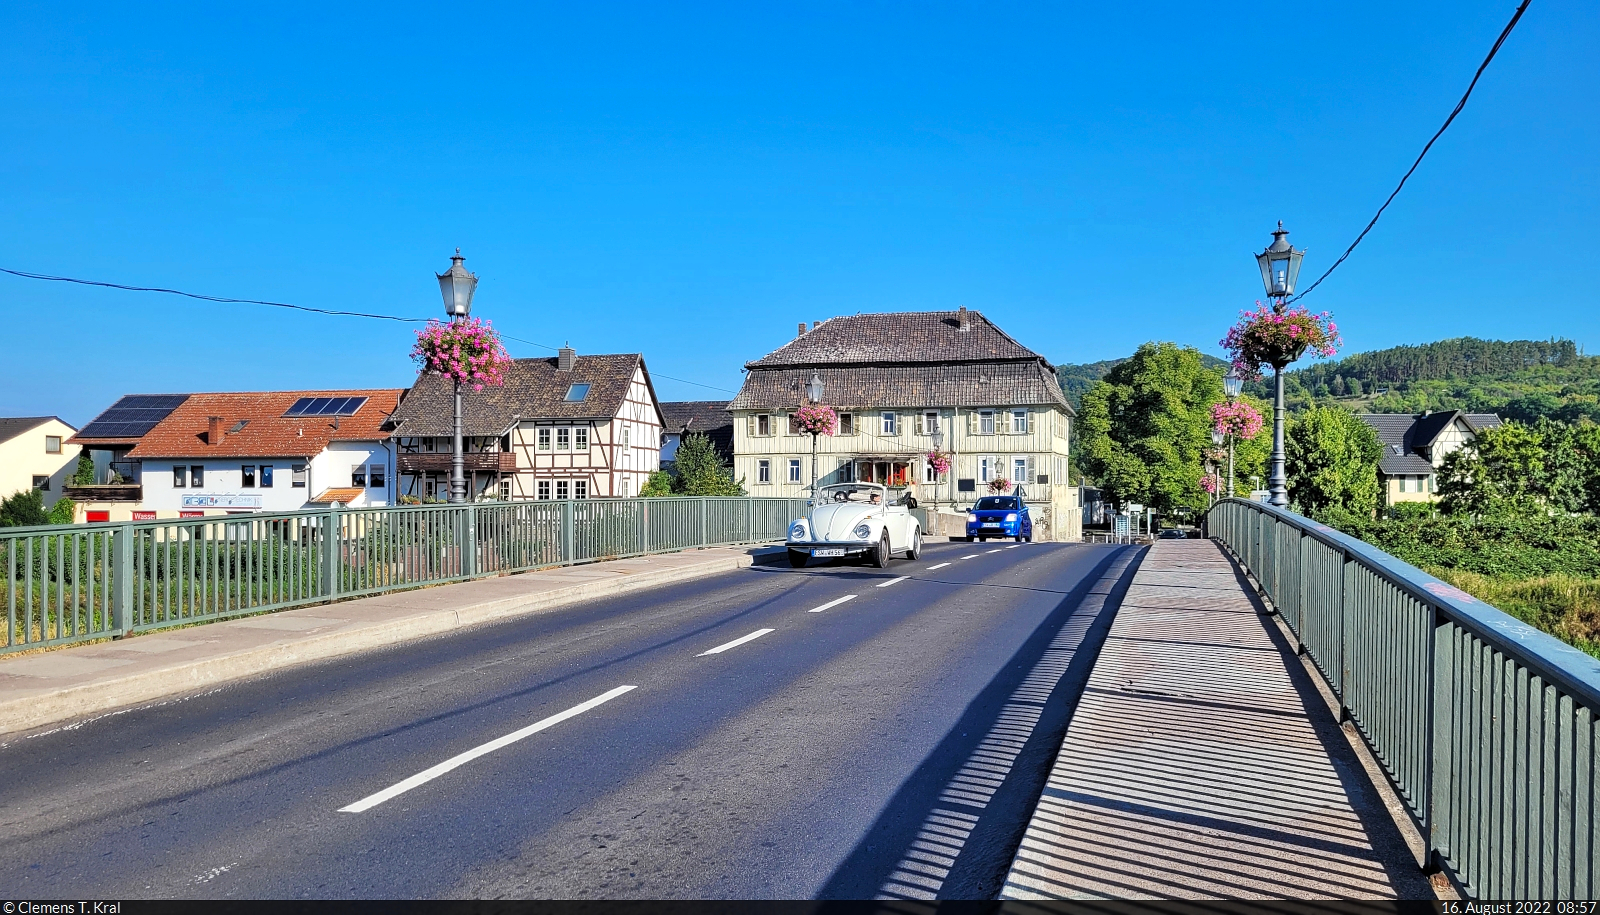 Die Werrabrcke auf der B 451 in Witzenhausen mutet historisch an, nicht zuletzt durch den zufllig vorbeifahrenden VW Kfer.

🕓 16.8.2022 | 8:57 Uhr